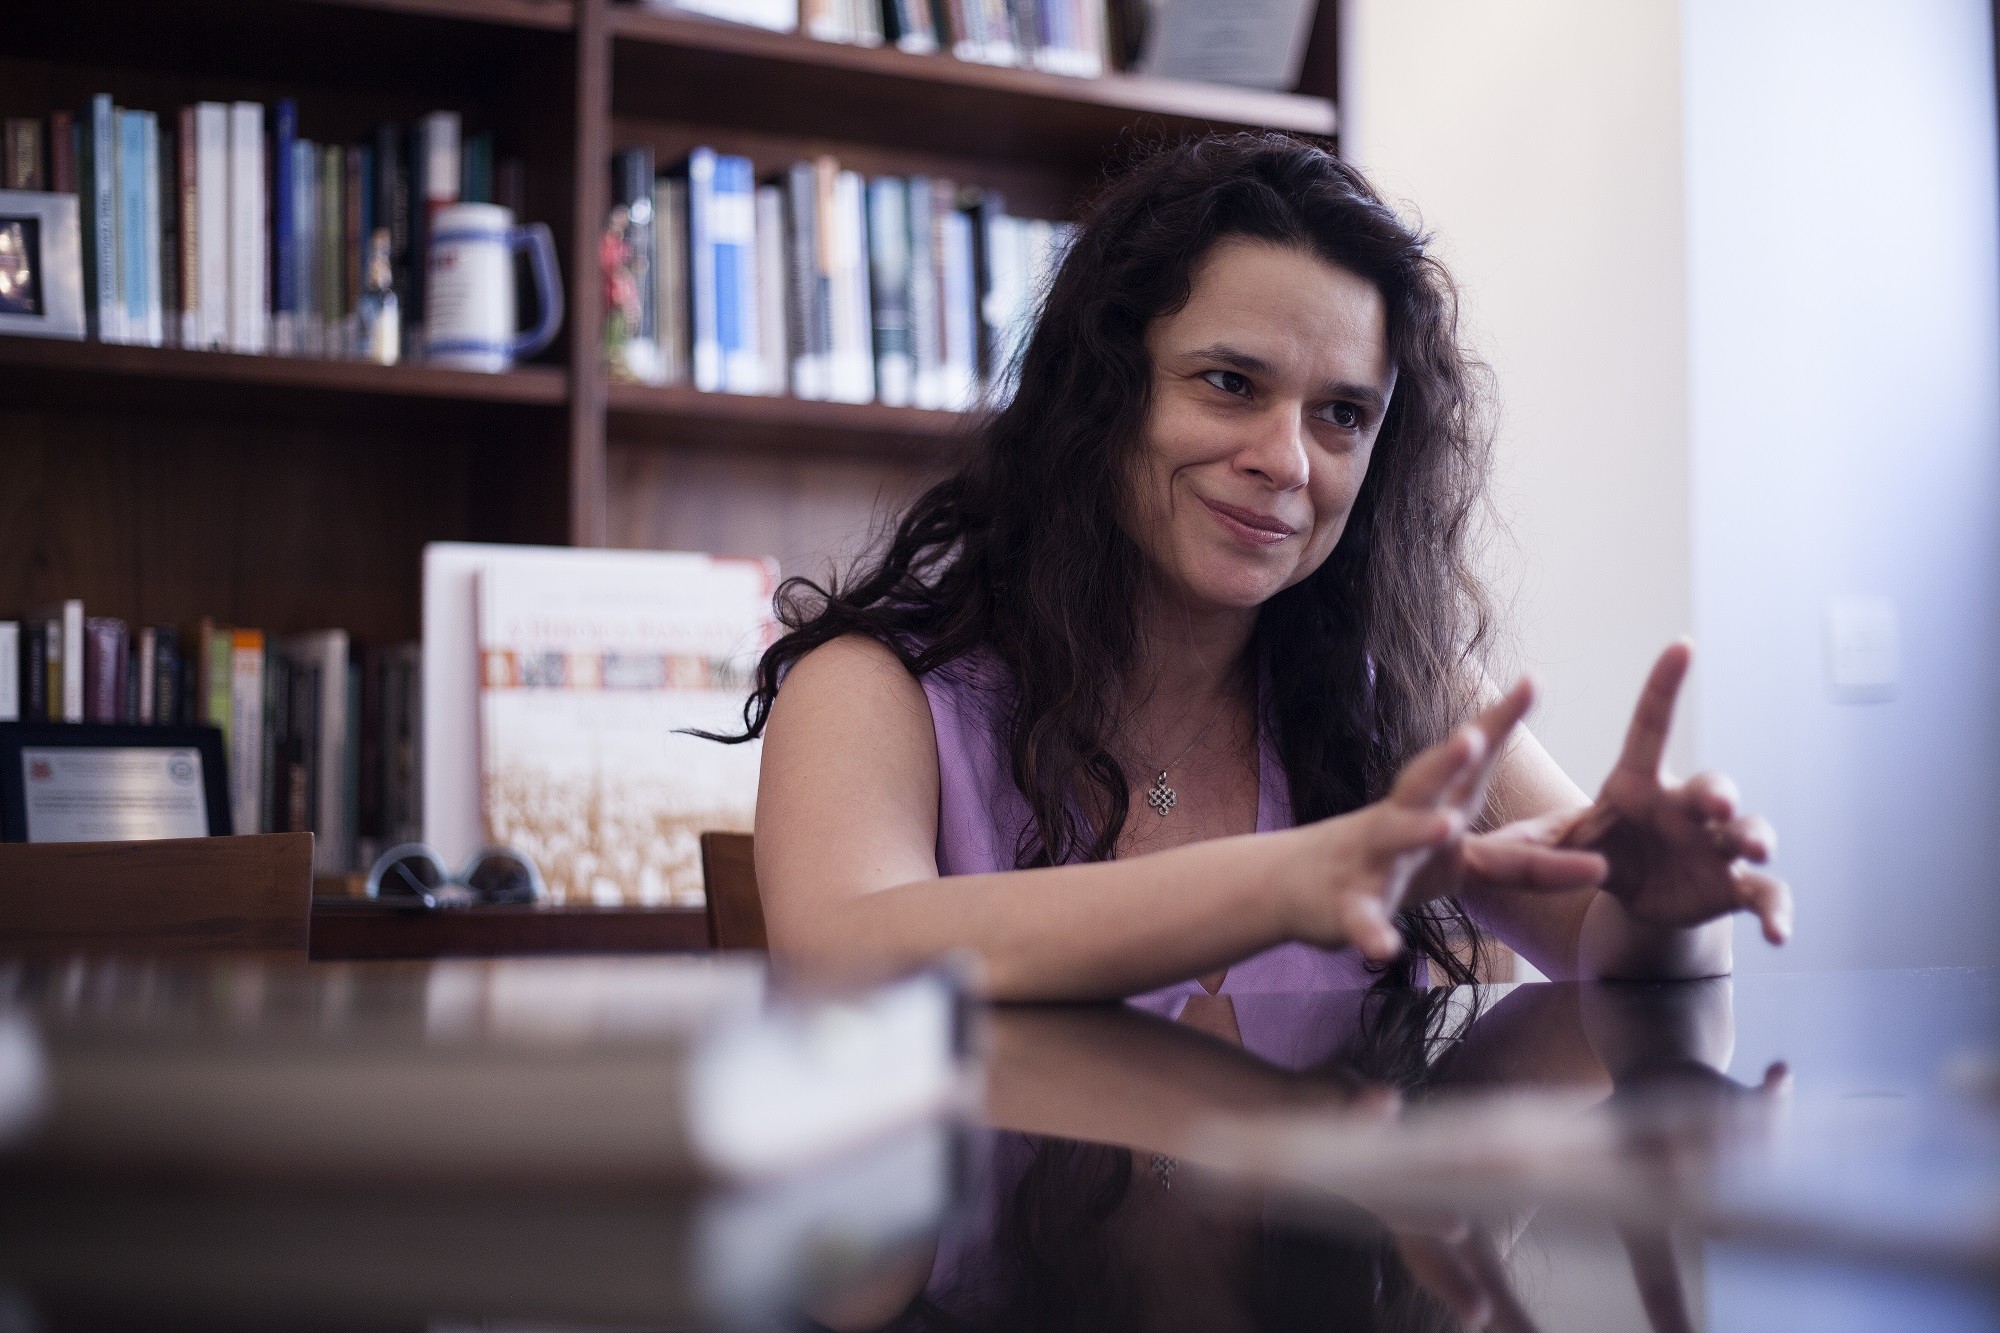 Janaina Paschoal em seu antigo escritório de advocacia, onde recebeu Marie Claire para esta entrevista (Foto: João Bertholini)